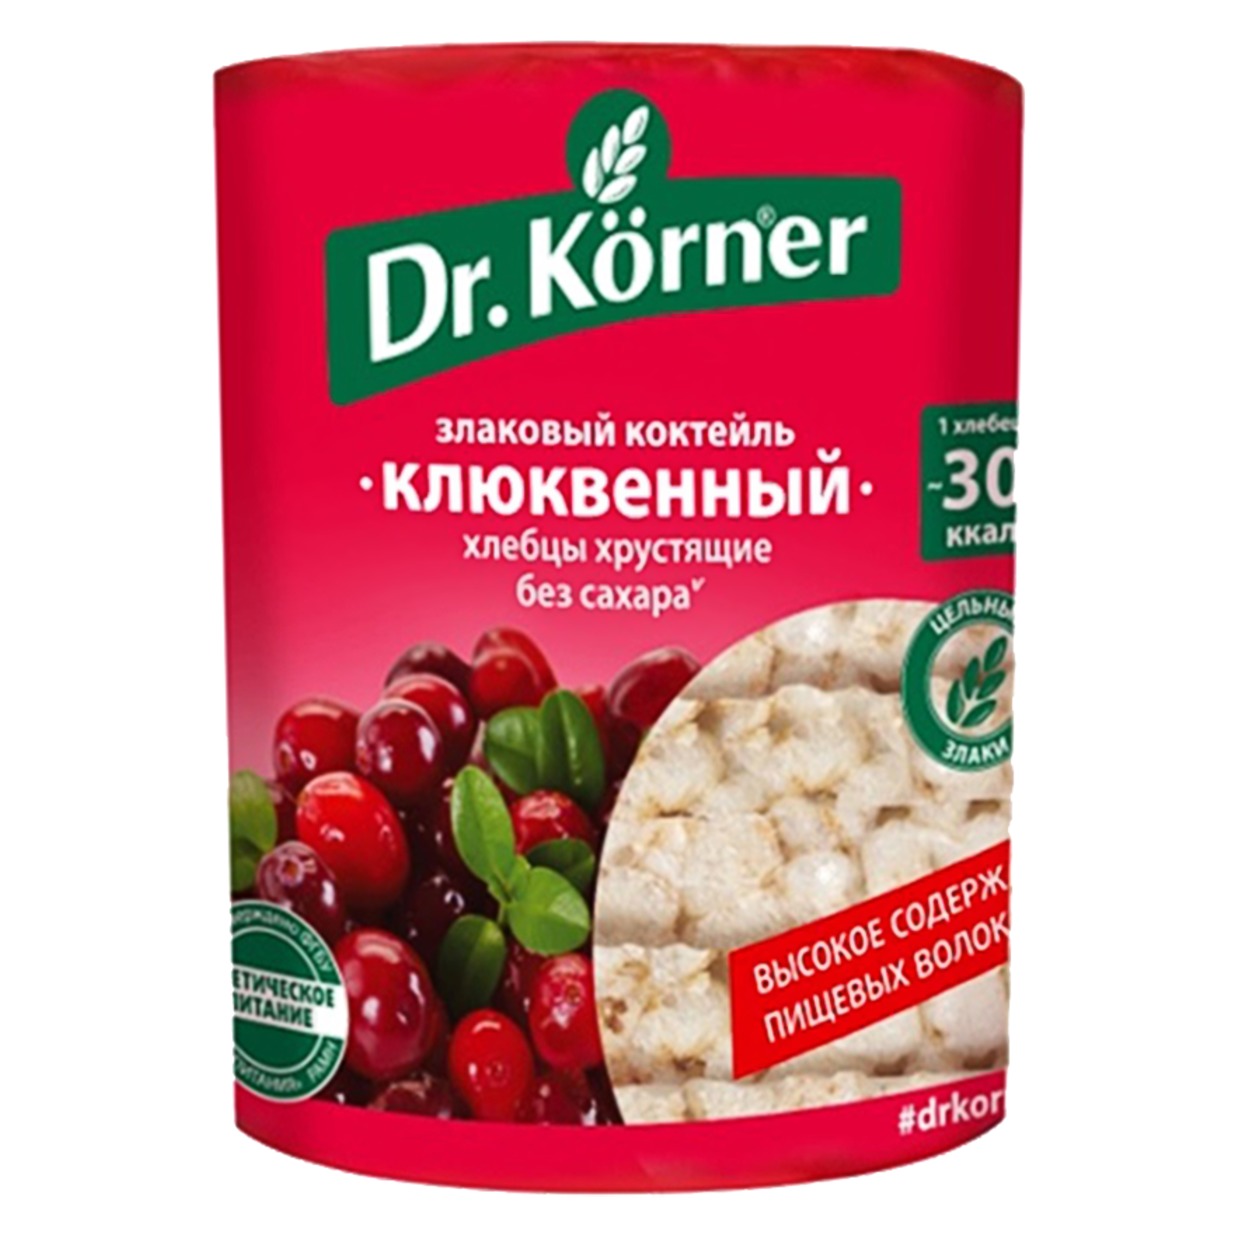 Хлебцы Злаковый коктейль, Dr.Korner, 100 г по акции в Пятерочке